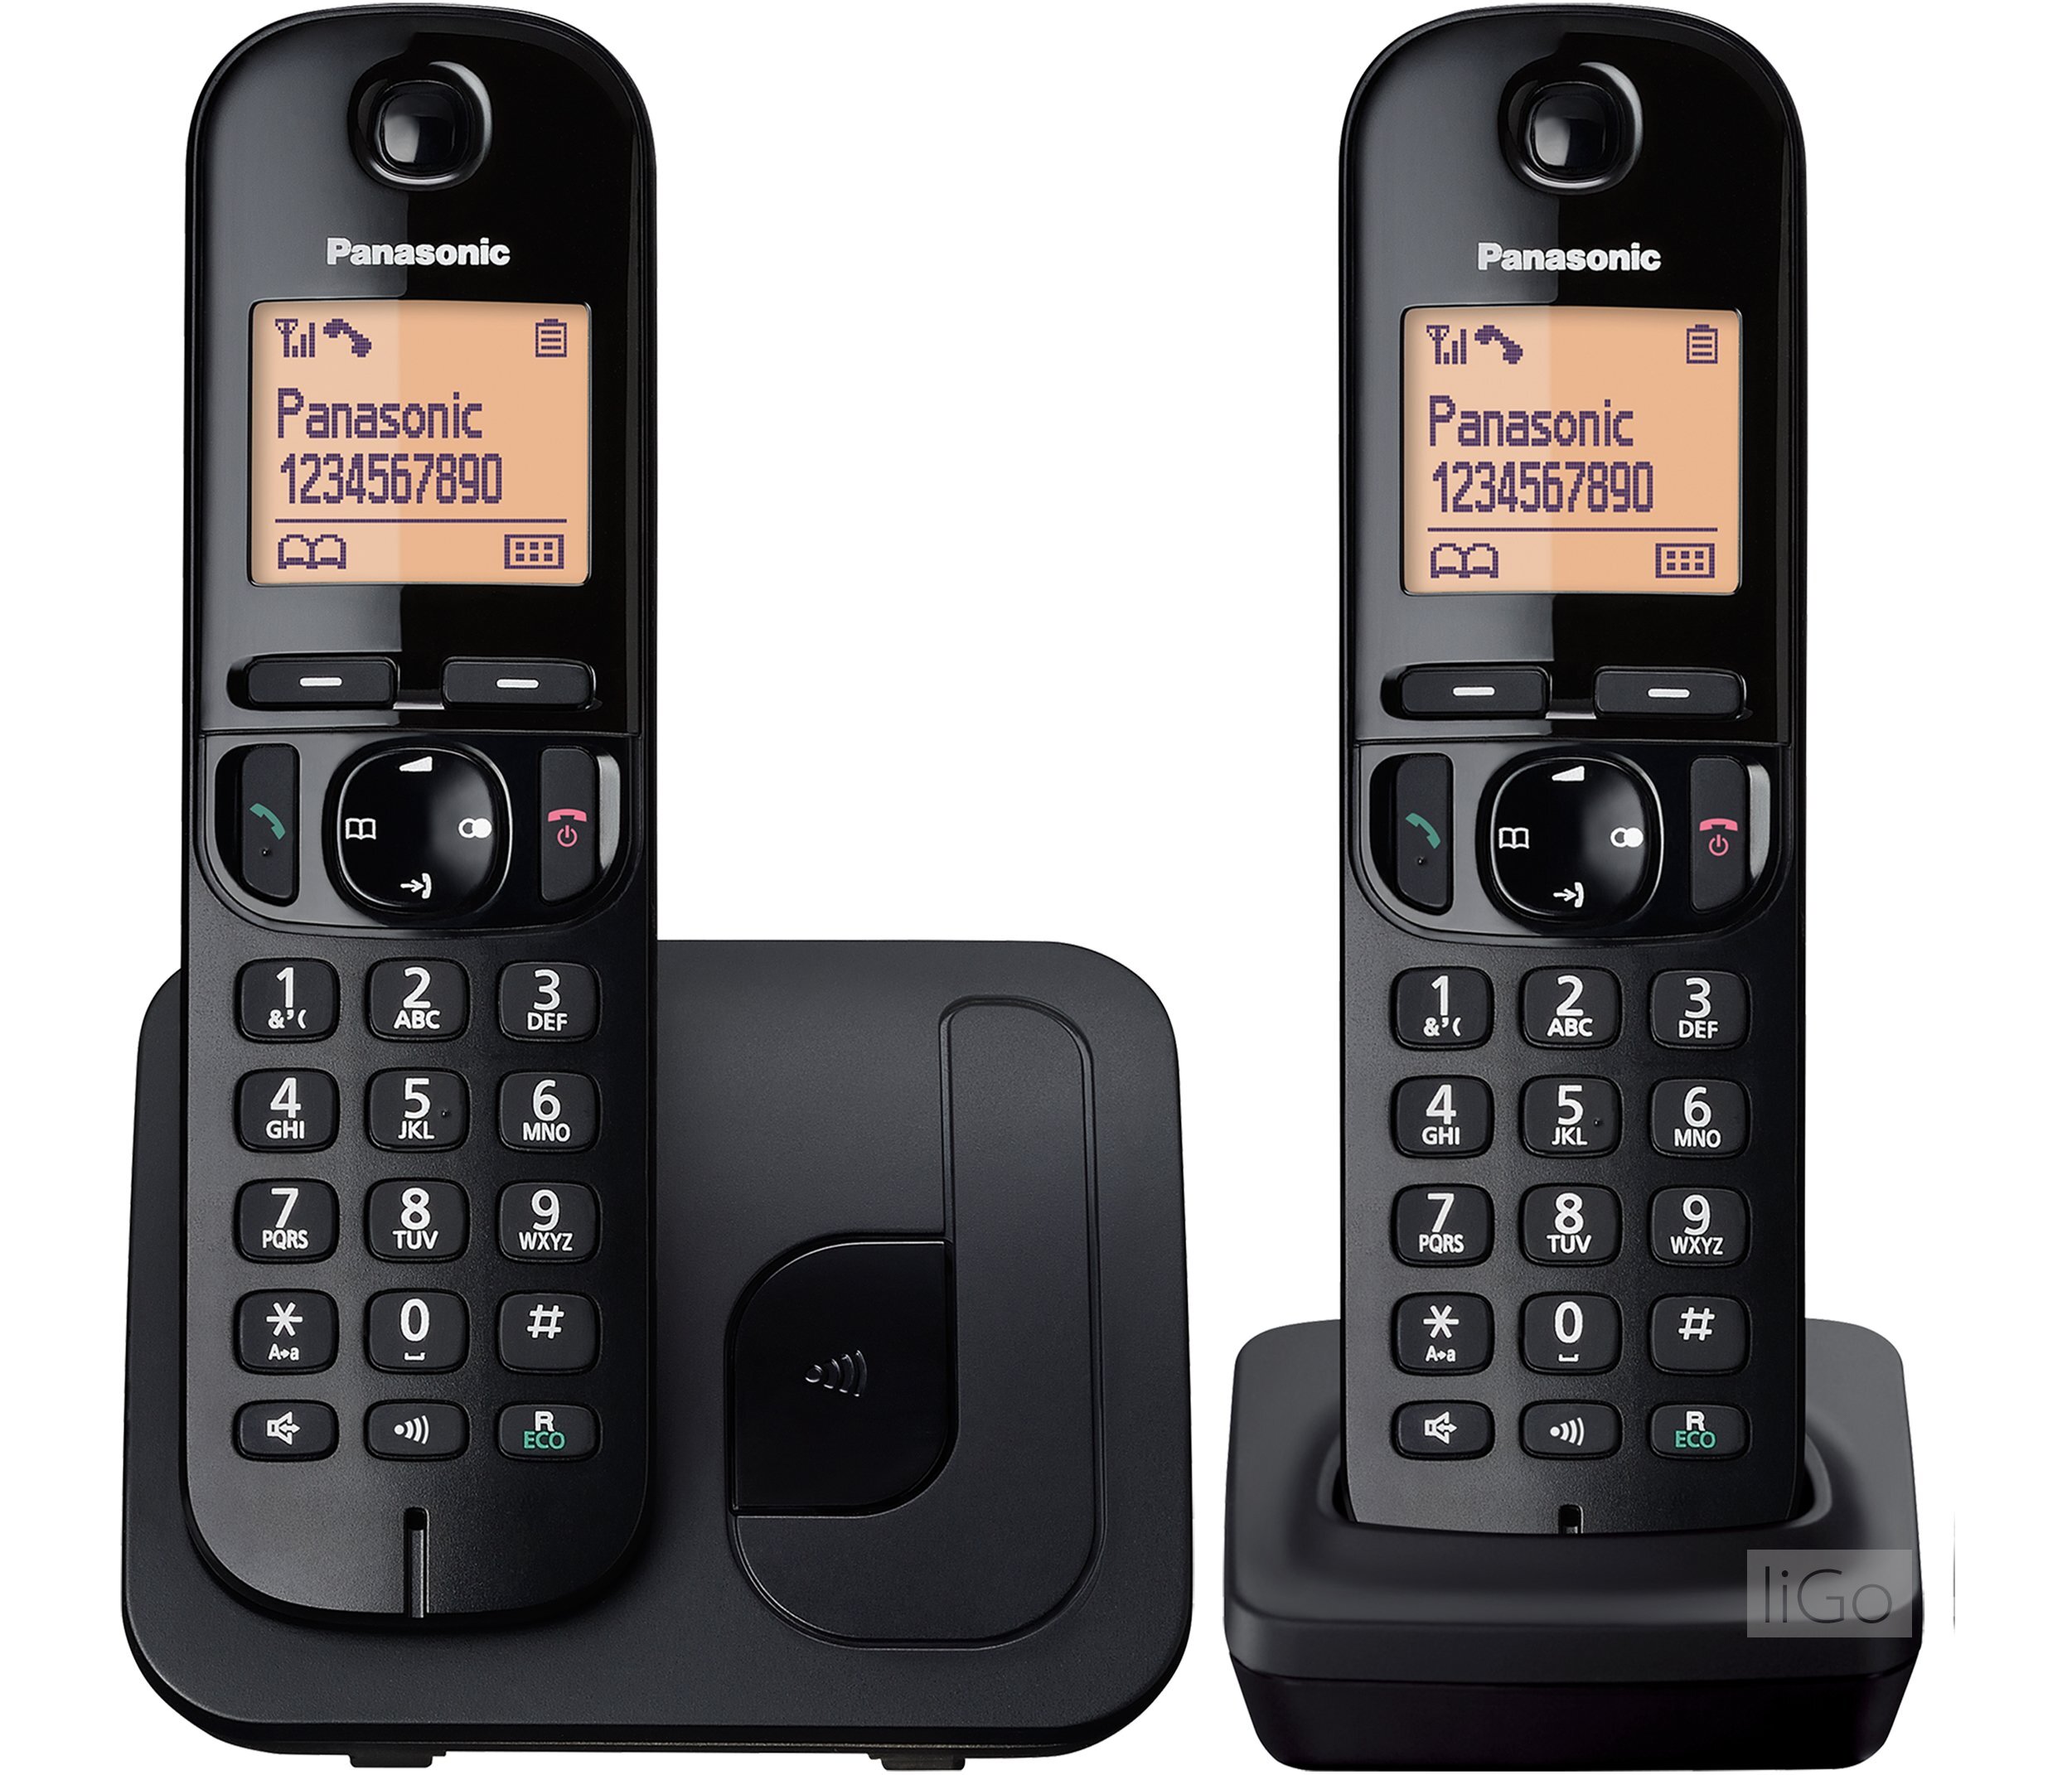 Điện thoại kéo dài Panasonic KX-TGC212